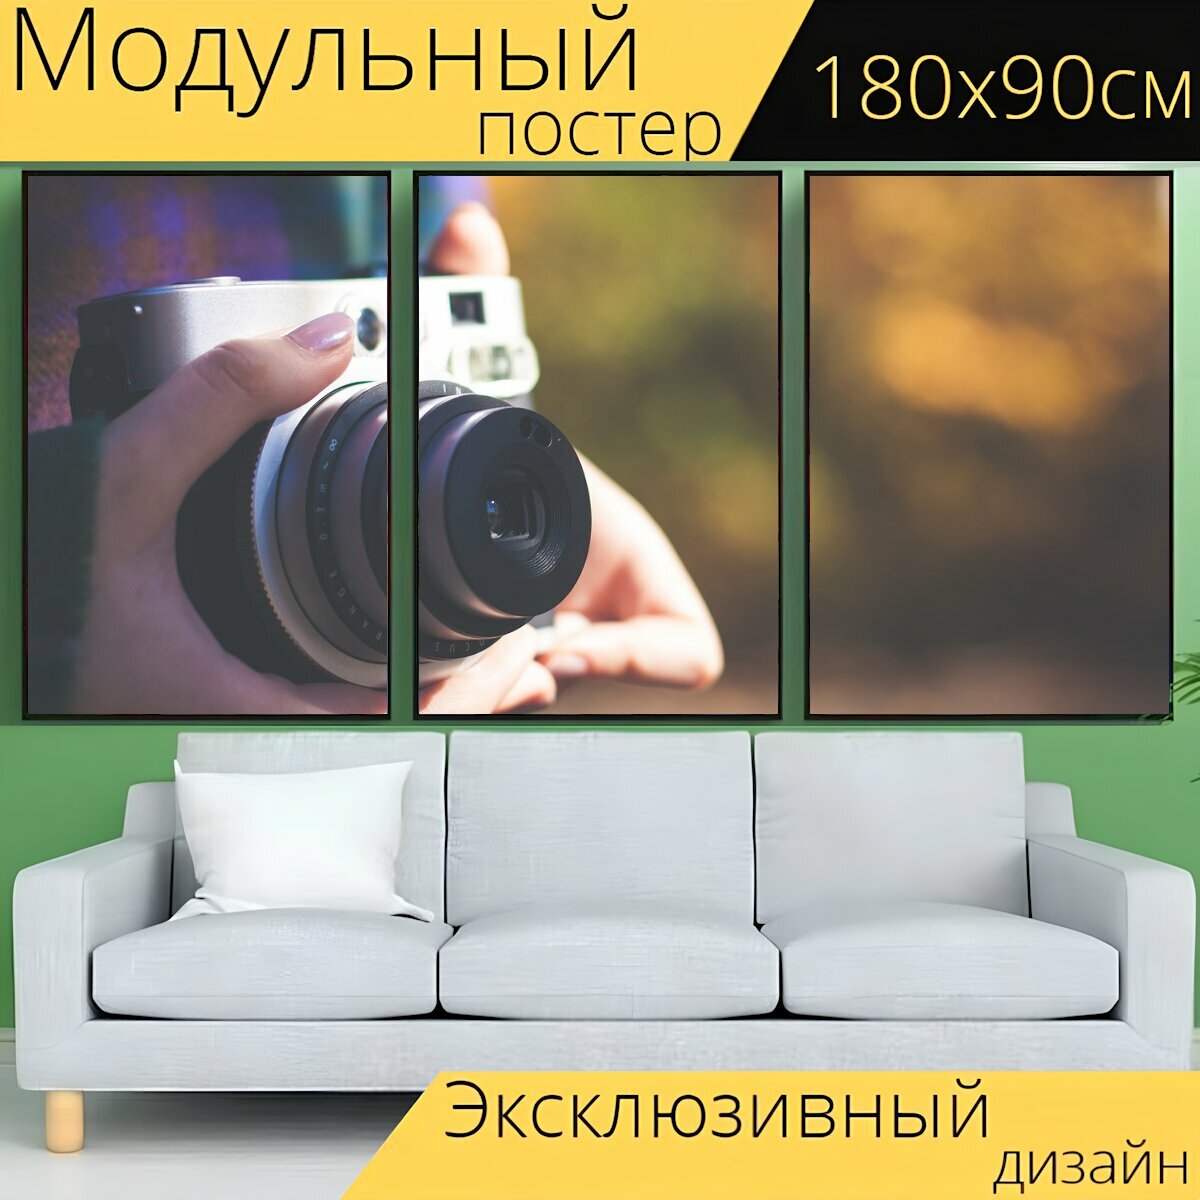 Модульный постер "Камера, линза, фотограф" 180 x 90 см. для интерьера